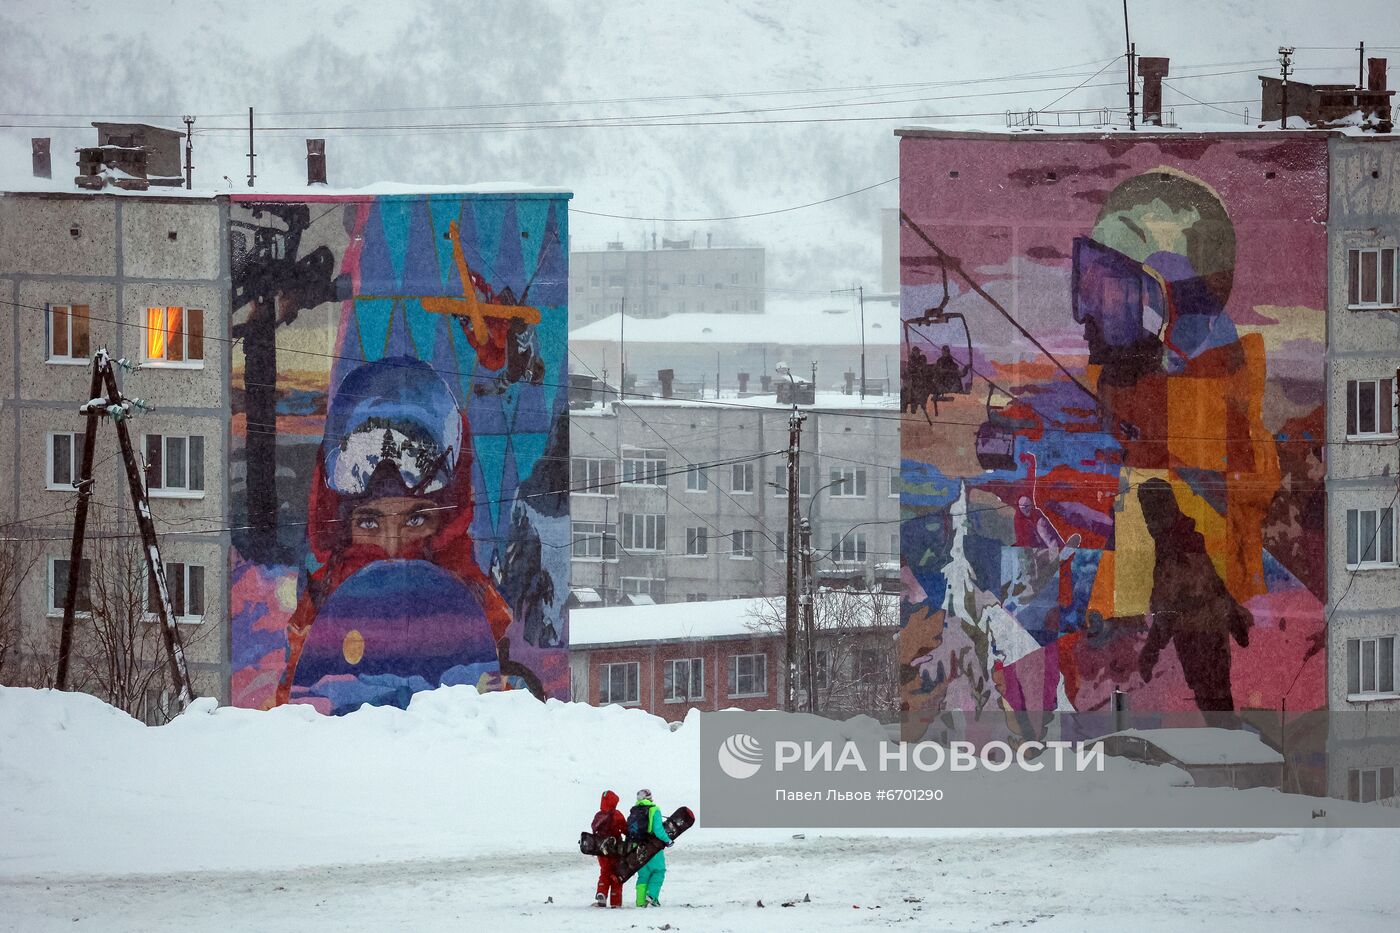 Открытие горнолыжного сезона на курорте "Большой Вудьявр" в Мурманской области